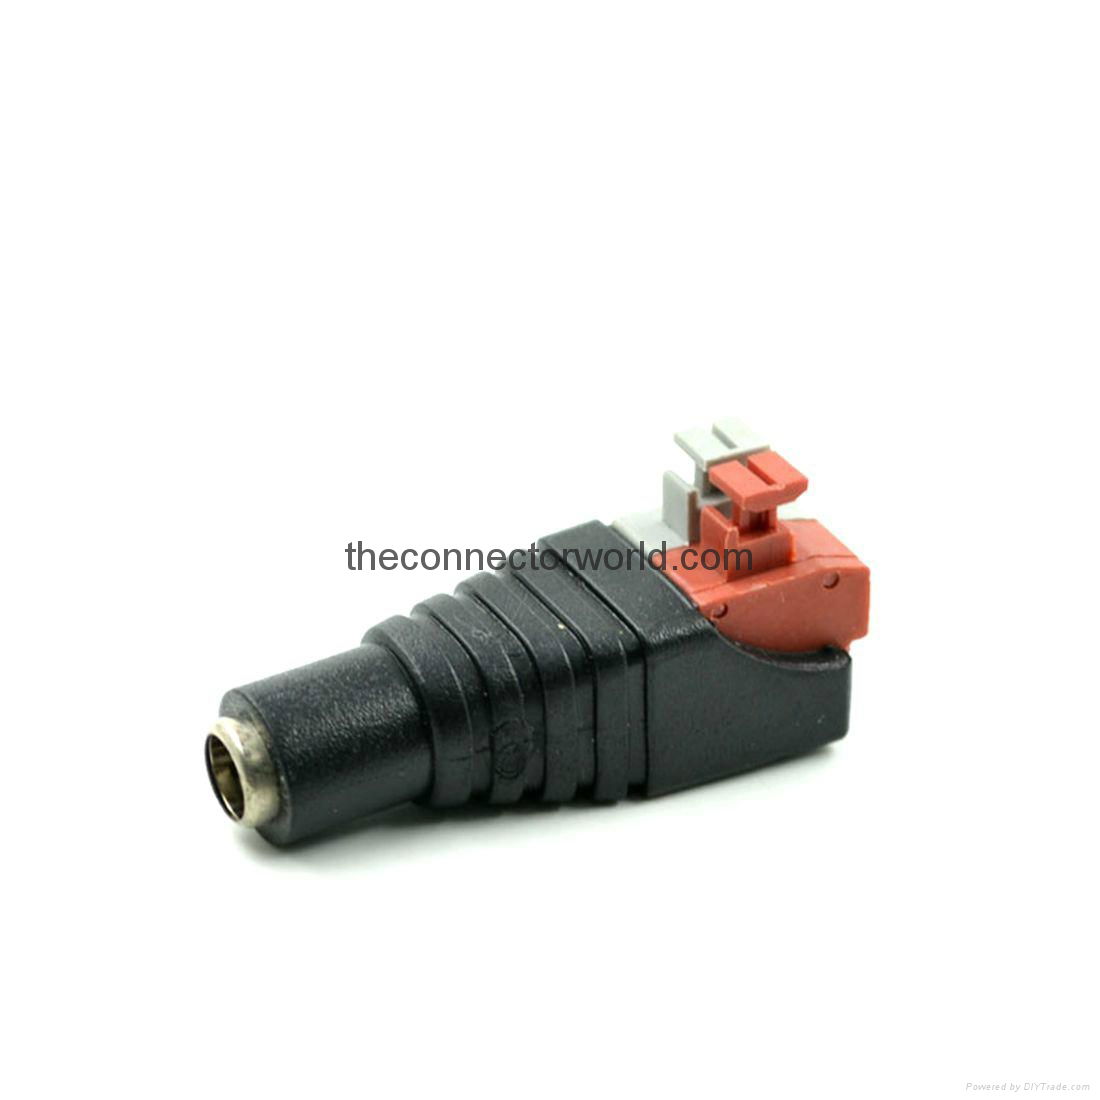  5.5×2.1 mm Female CCTV Power Plug Adapter for LED Light